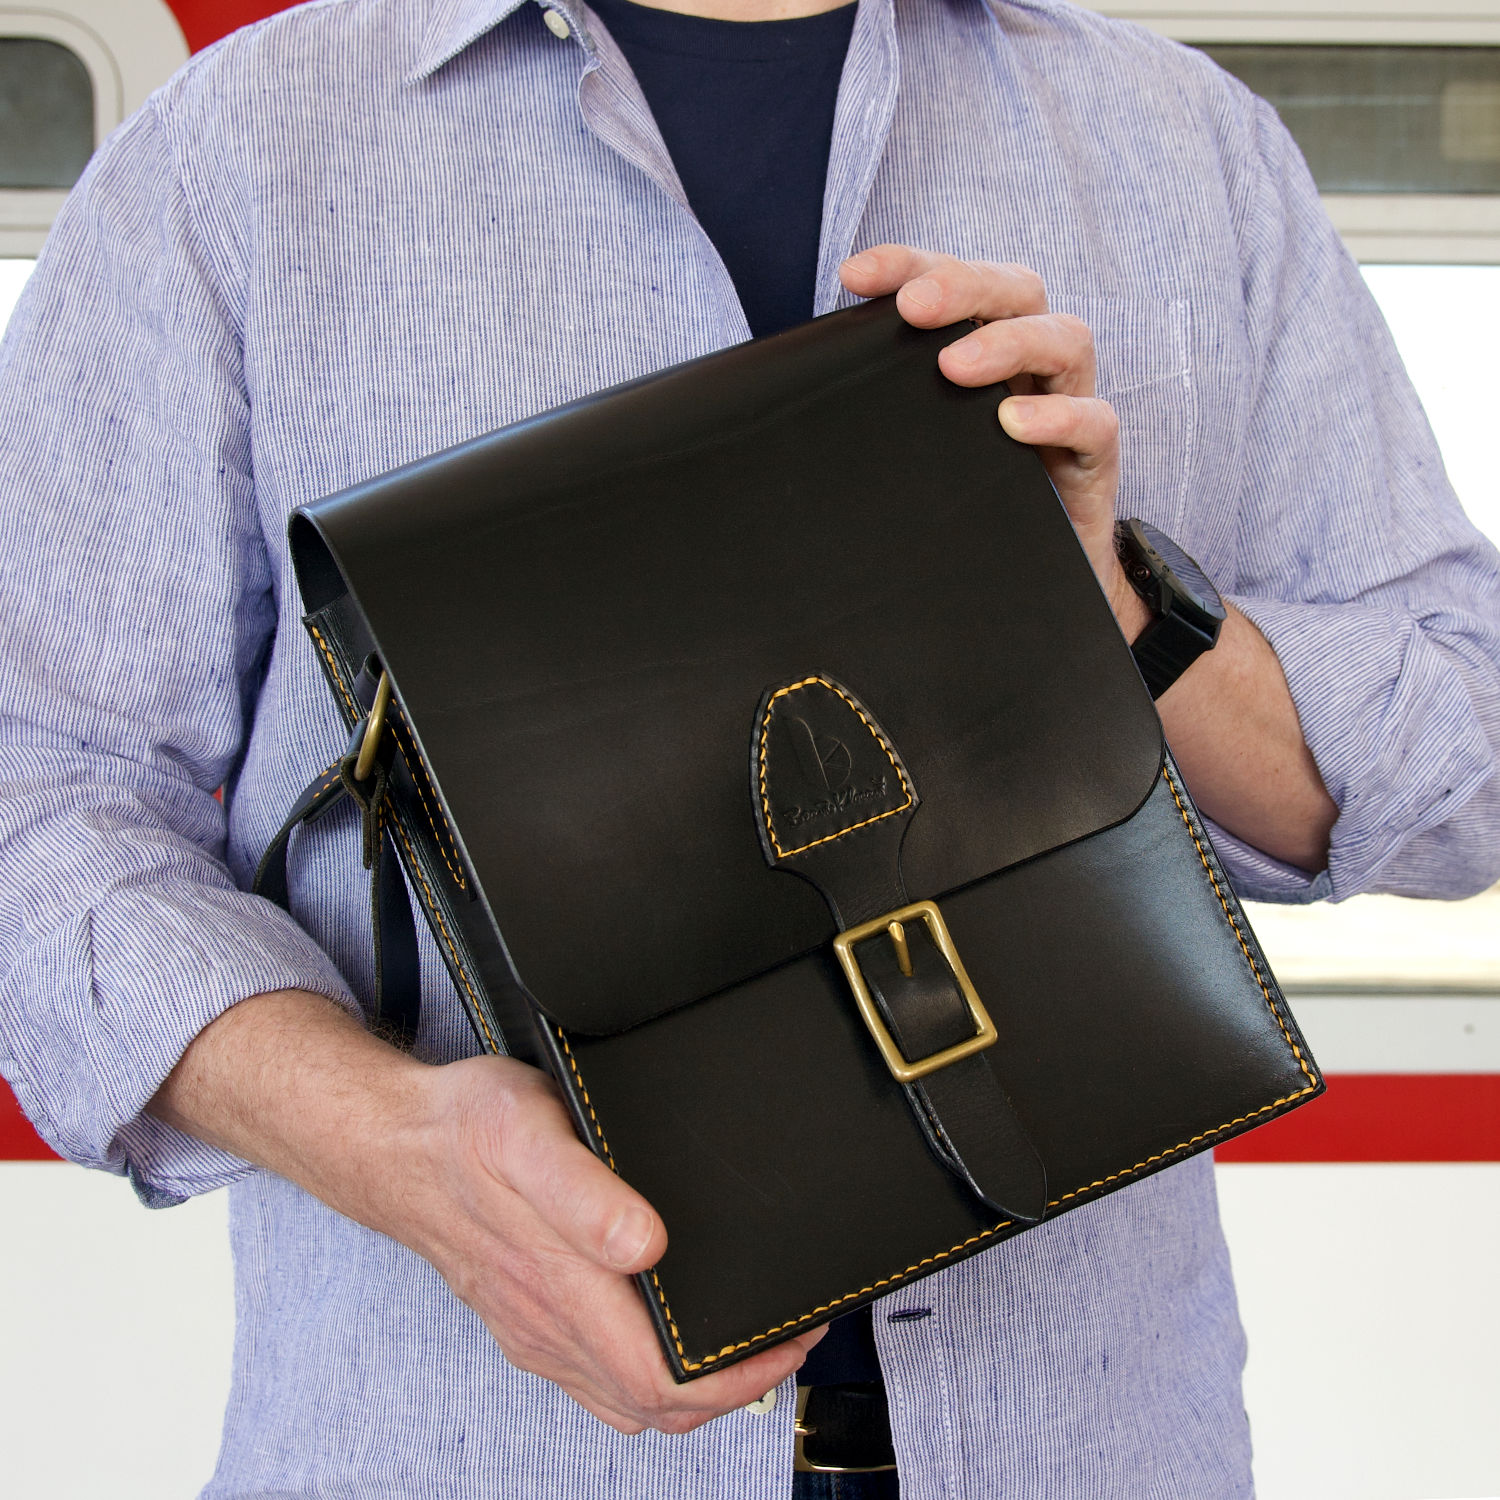 black leather messenger bag held in hands